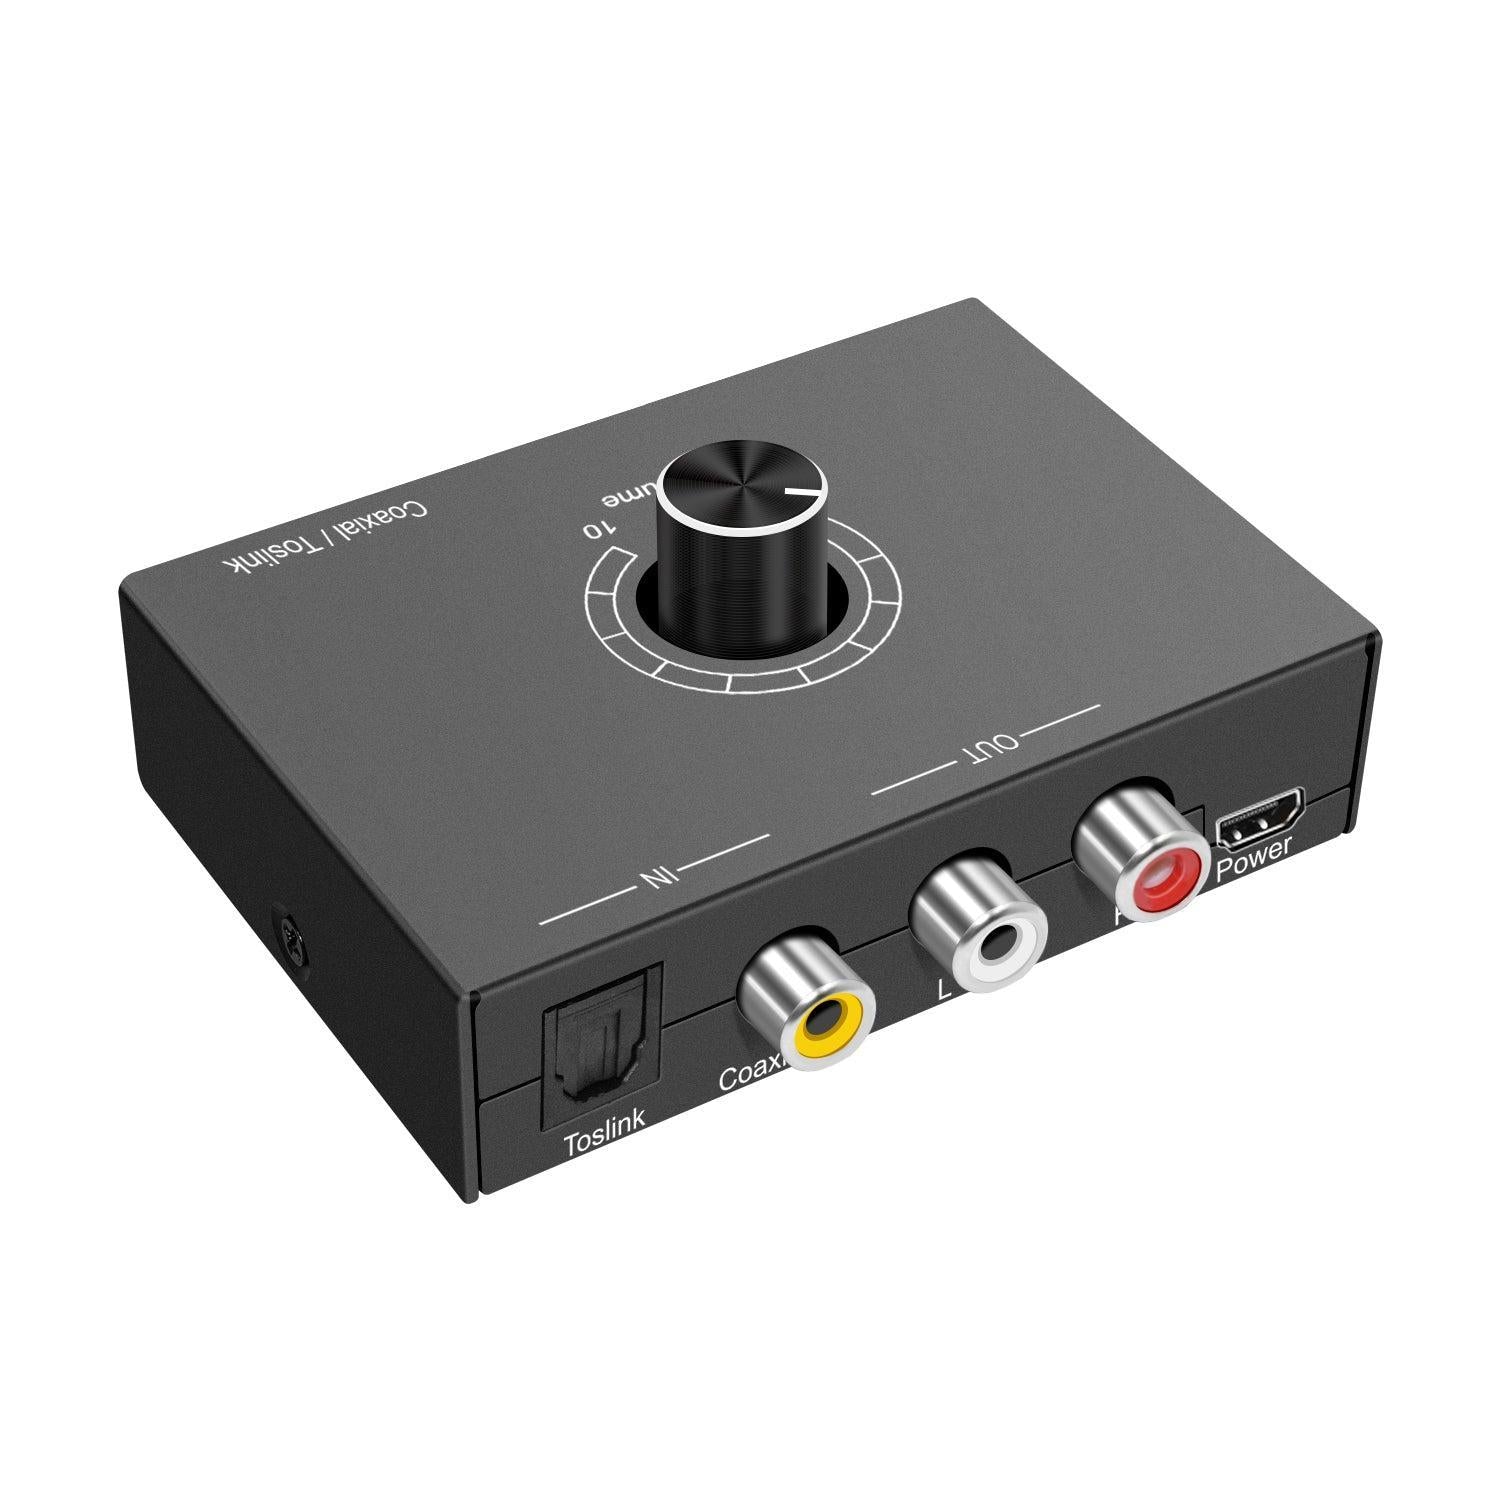 NÖRDIC Digital til Analog lydkonverter Toslink og Coaxial til RCA L/R og hovedtelefoner med volumenkontrol metal DAC D/A konverter konverter